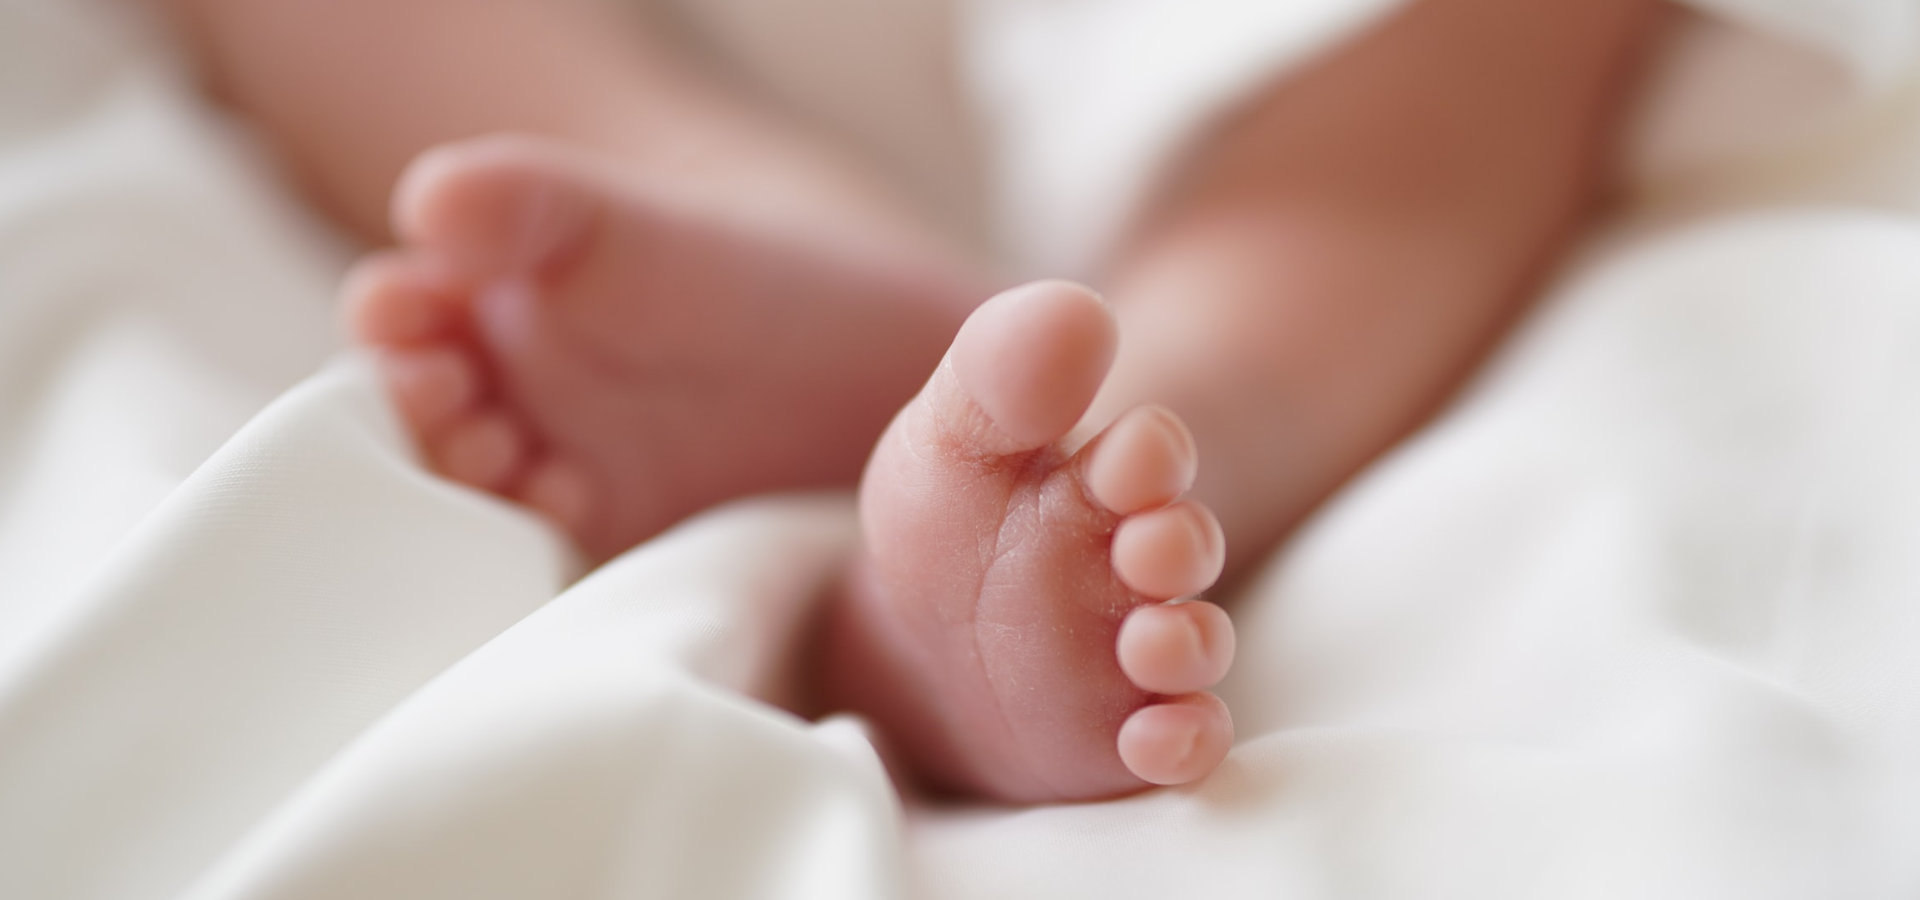 Estudo revela impacto da pandemia de COVID-19 nos cuidados de saúde materno-infantis